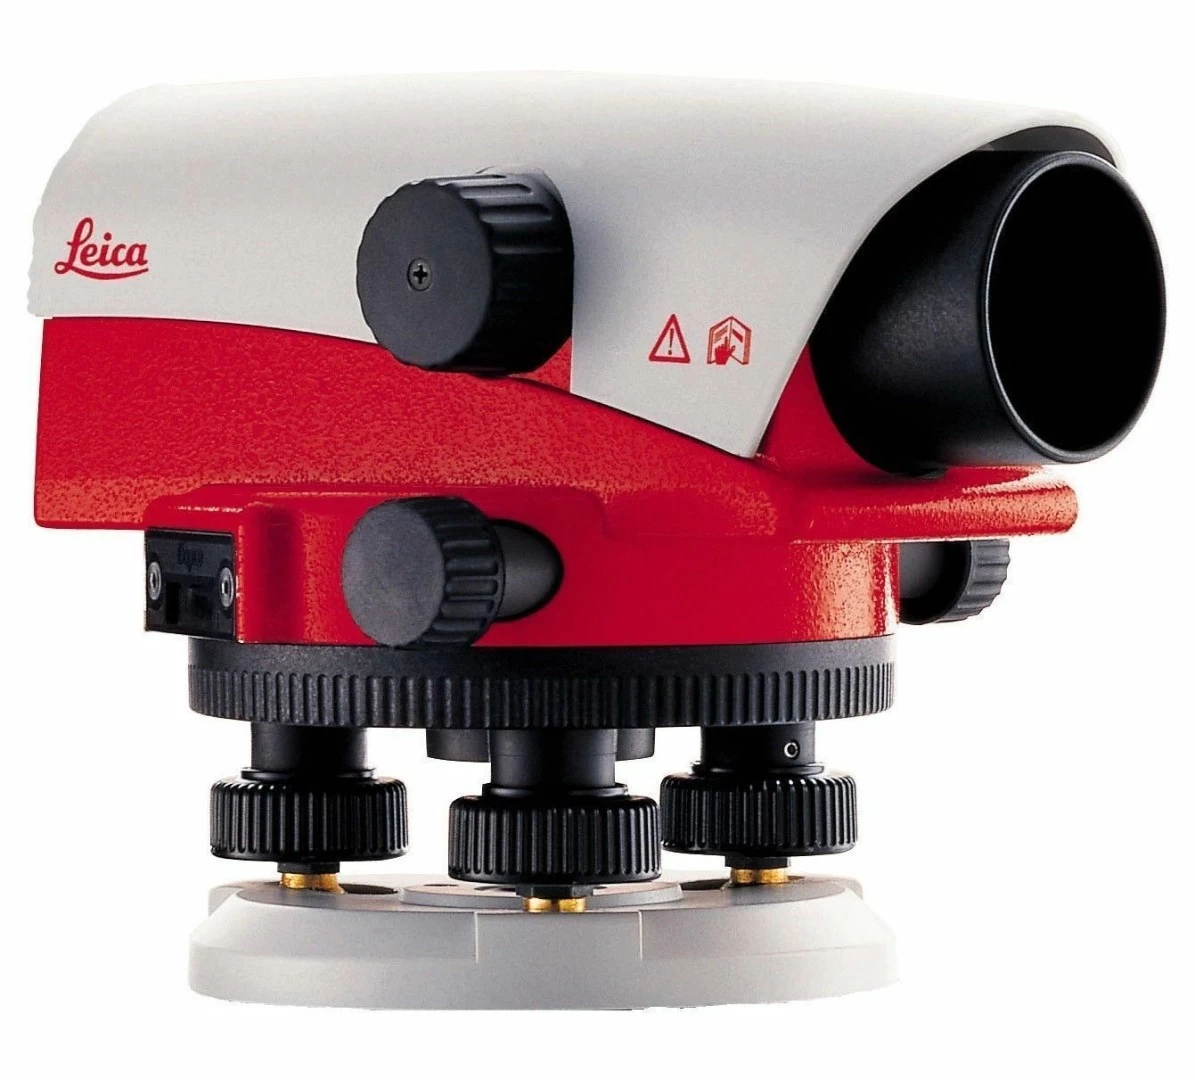 Комплект оптический нивелир Leica NA 720 штатив рейка - 3 в 1 с поверкой - 2